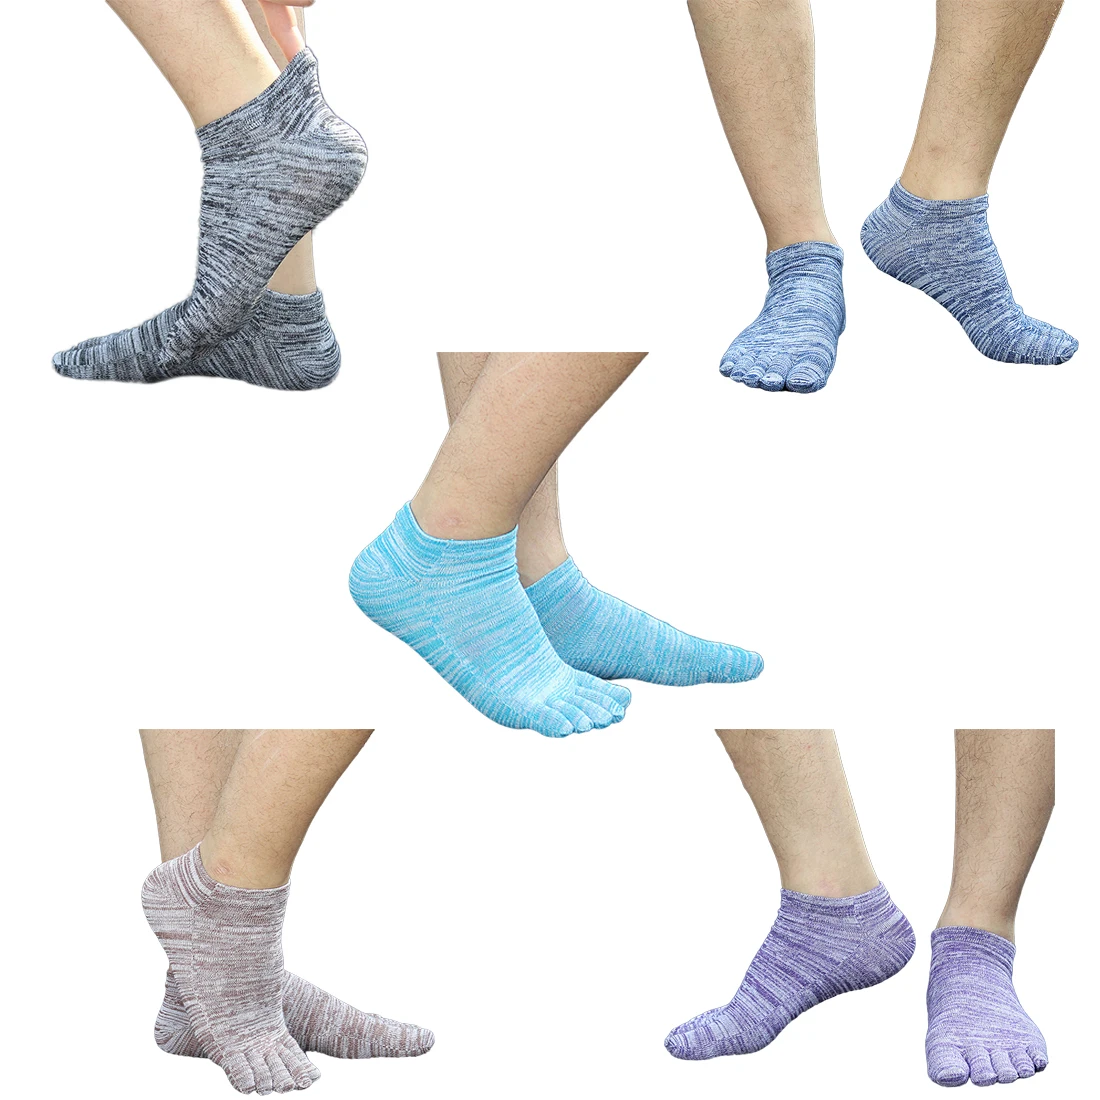 Топ продаж 5 цветов мужские хлопковые носки летние пять пальцев носки для мужчин модные дышащие носки с пальцами лодыжки носки